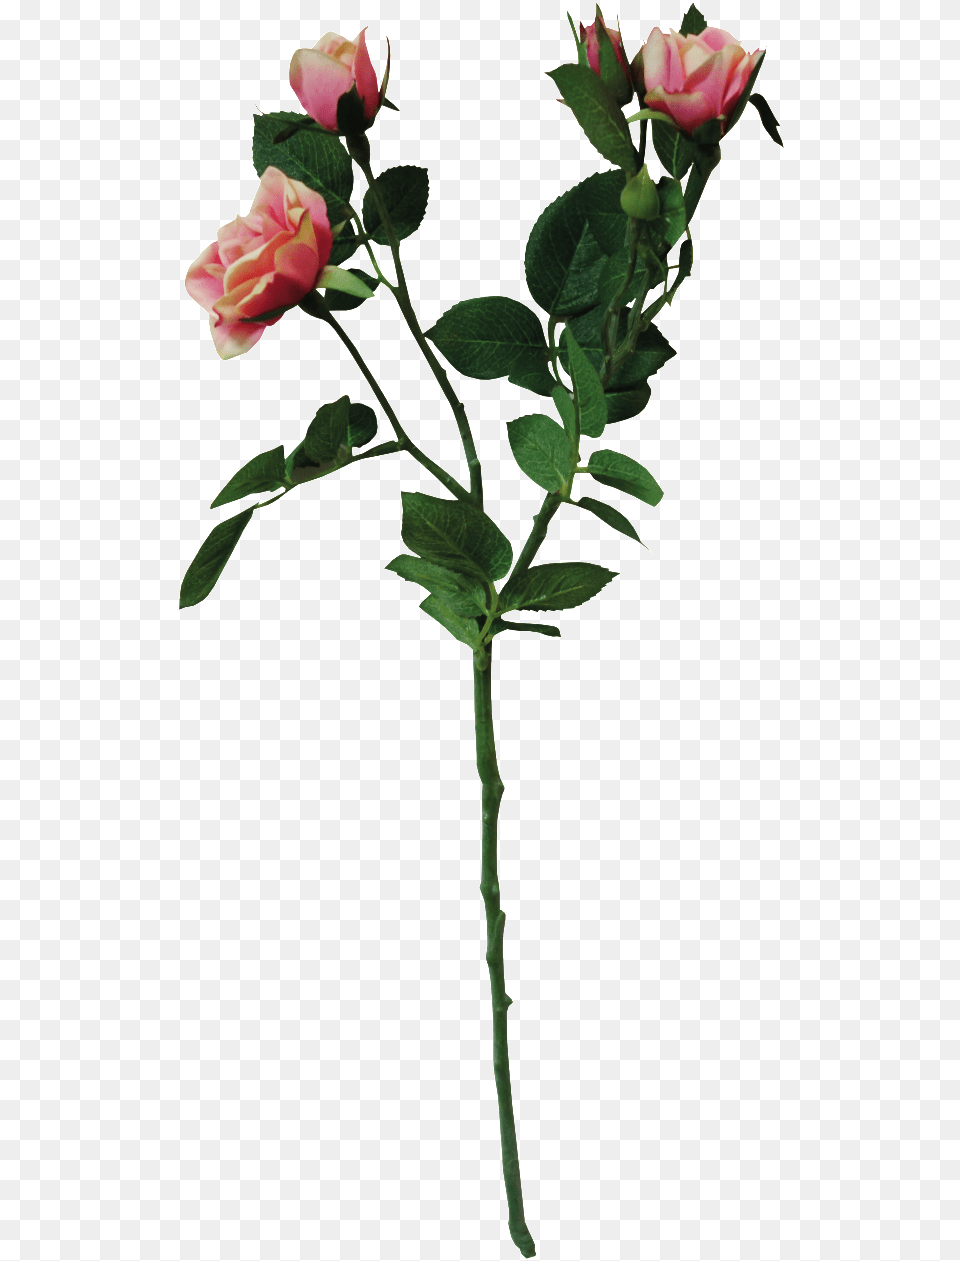 Ramo De Flores De Color Rosa Con Un Transparente Rosa Rugosa, Flower, Flower Arrangement, Plant, Rose Free Png Download